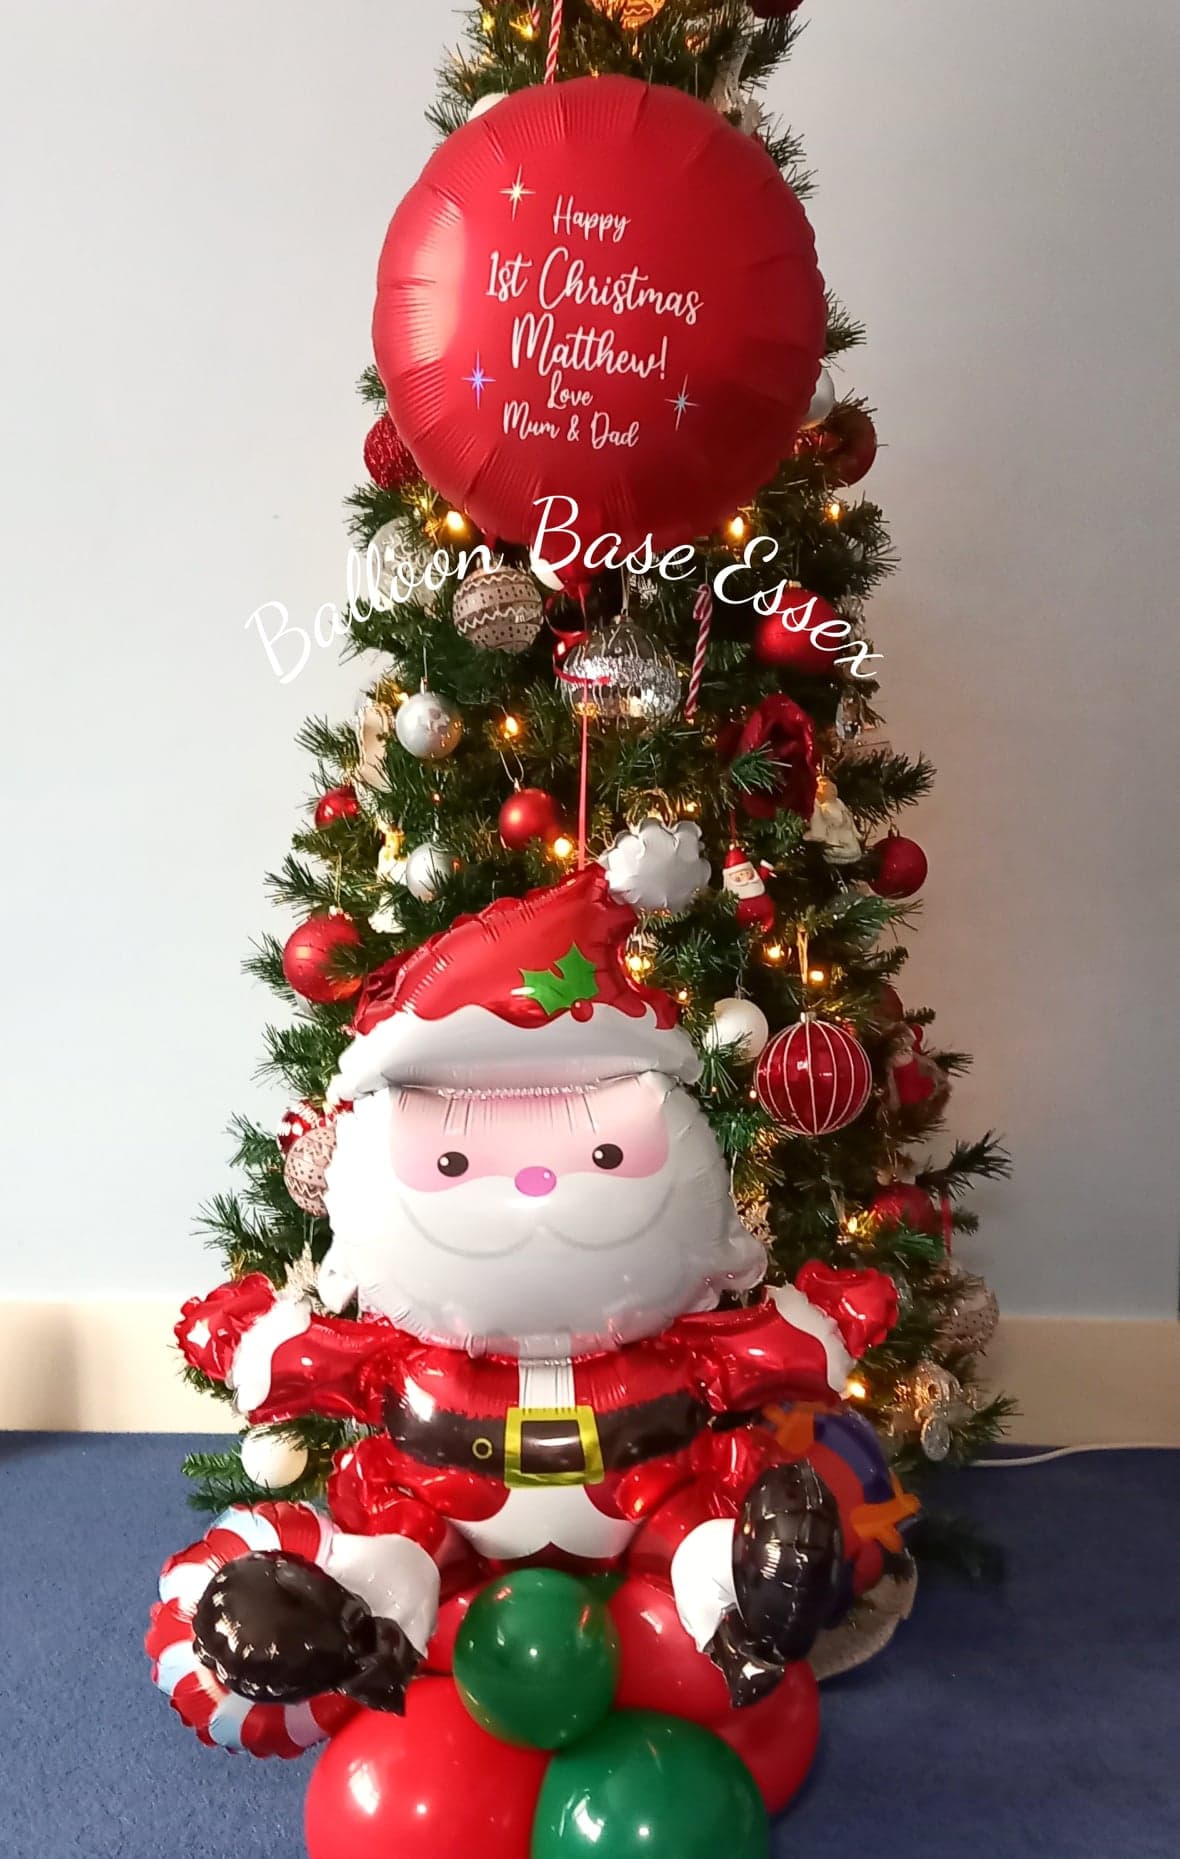 Christmas balloon with large Santa balloon at base